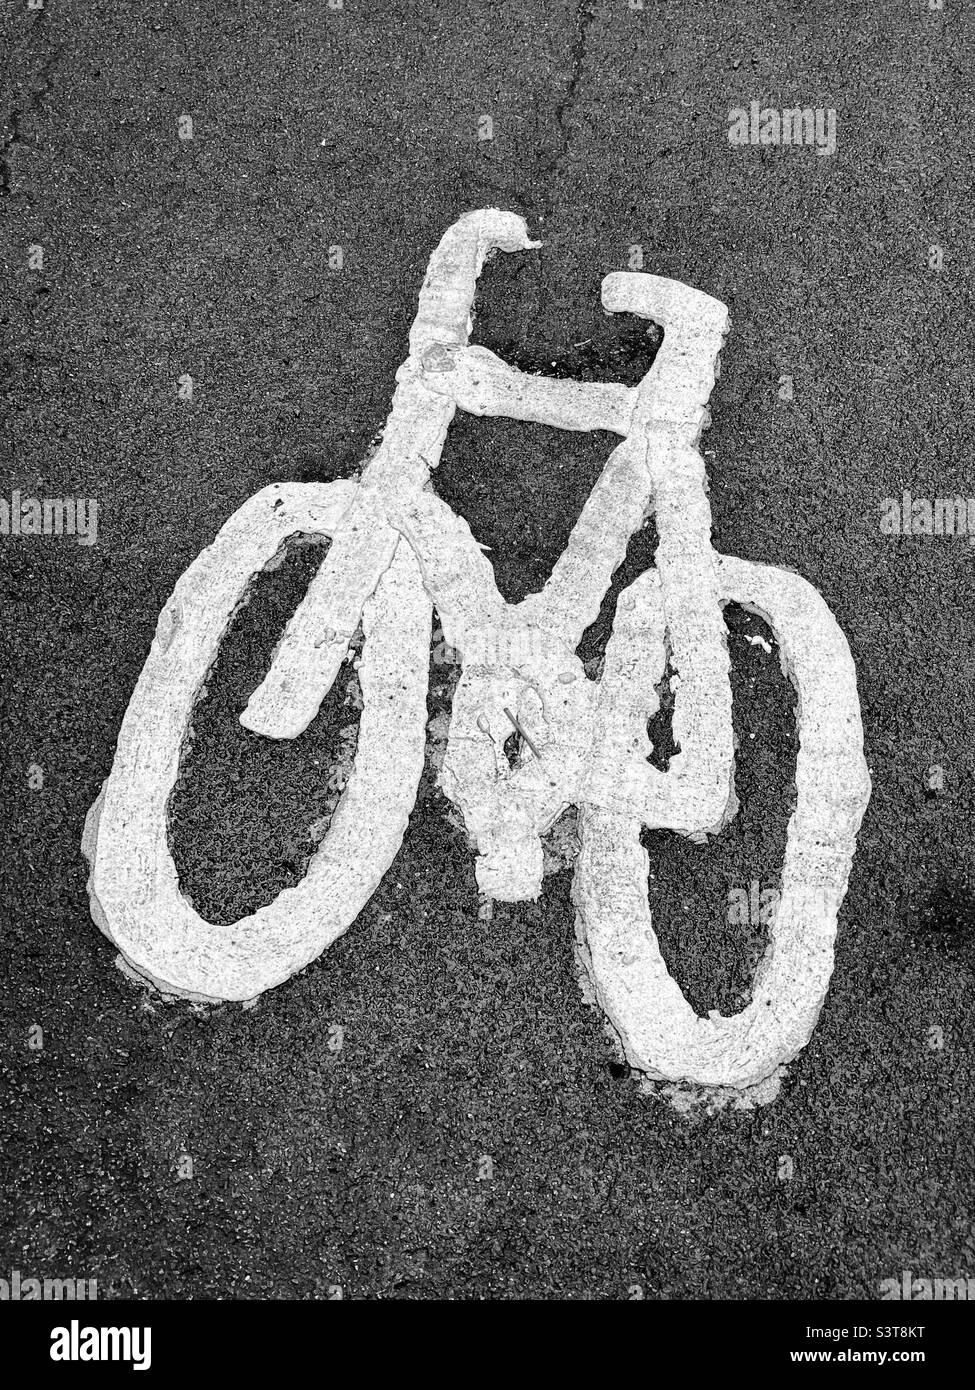 L'immagine disegnata a mano e dipinta di una bicicletta indica che questa zona è destinata ai ciclisti. Questa è una pista ciclabile! Foto ©️ COLIN HOSKINS. Foto Stock